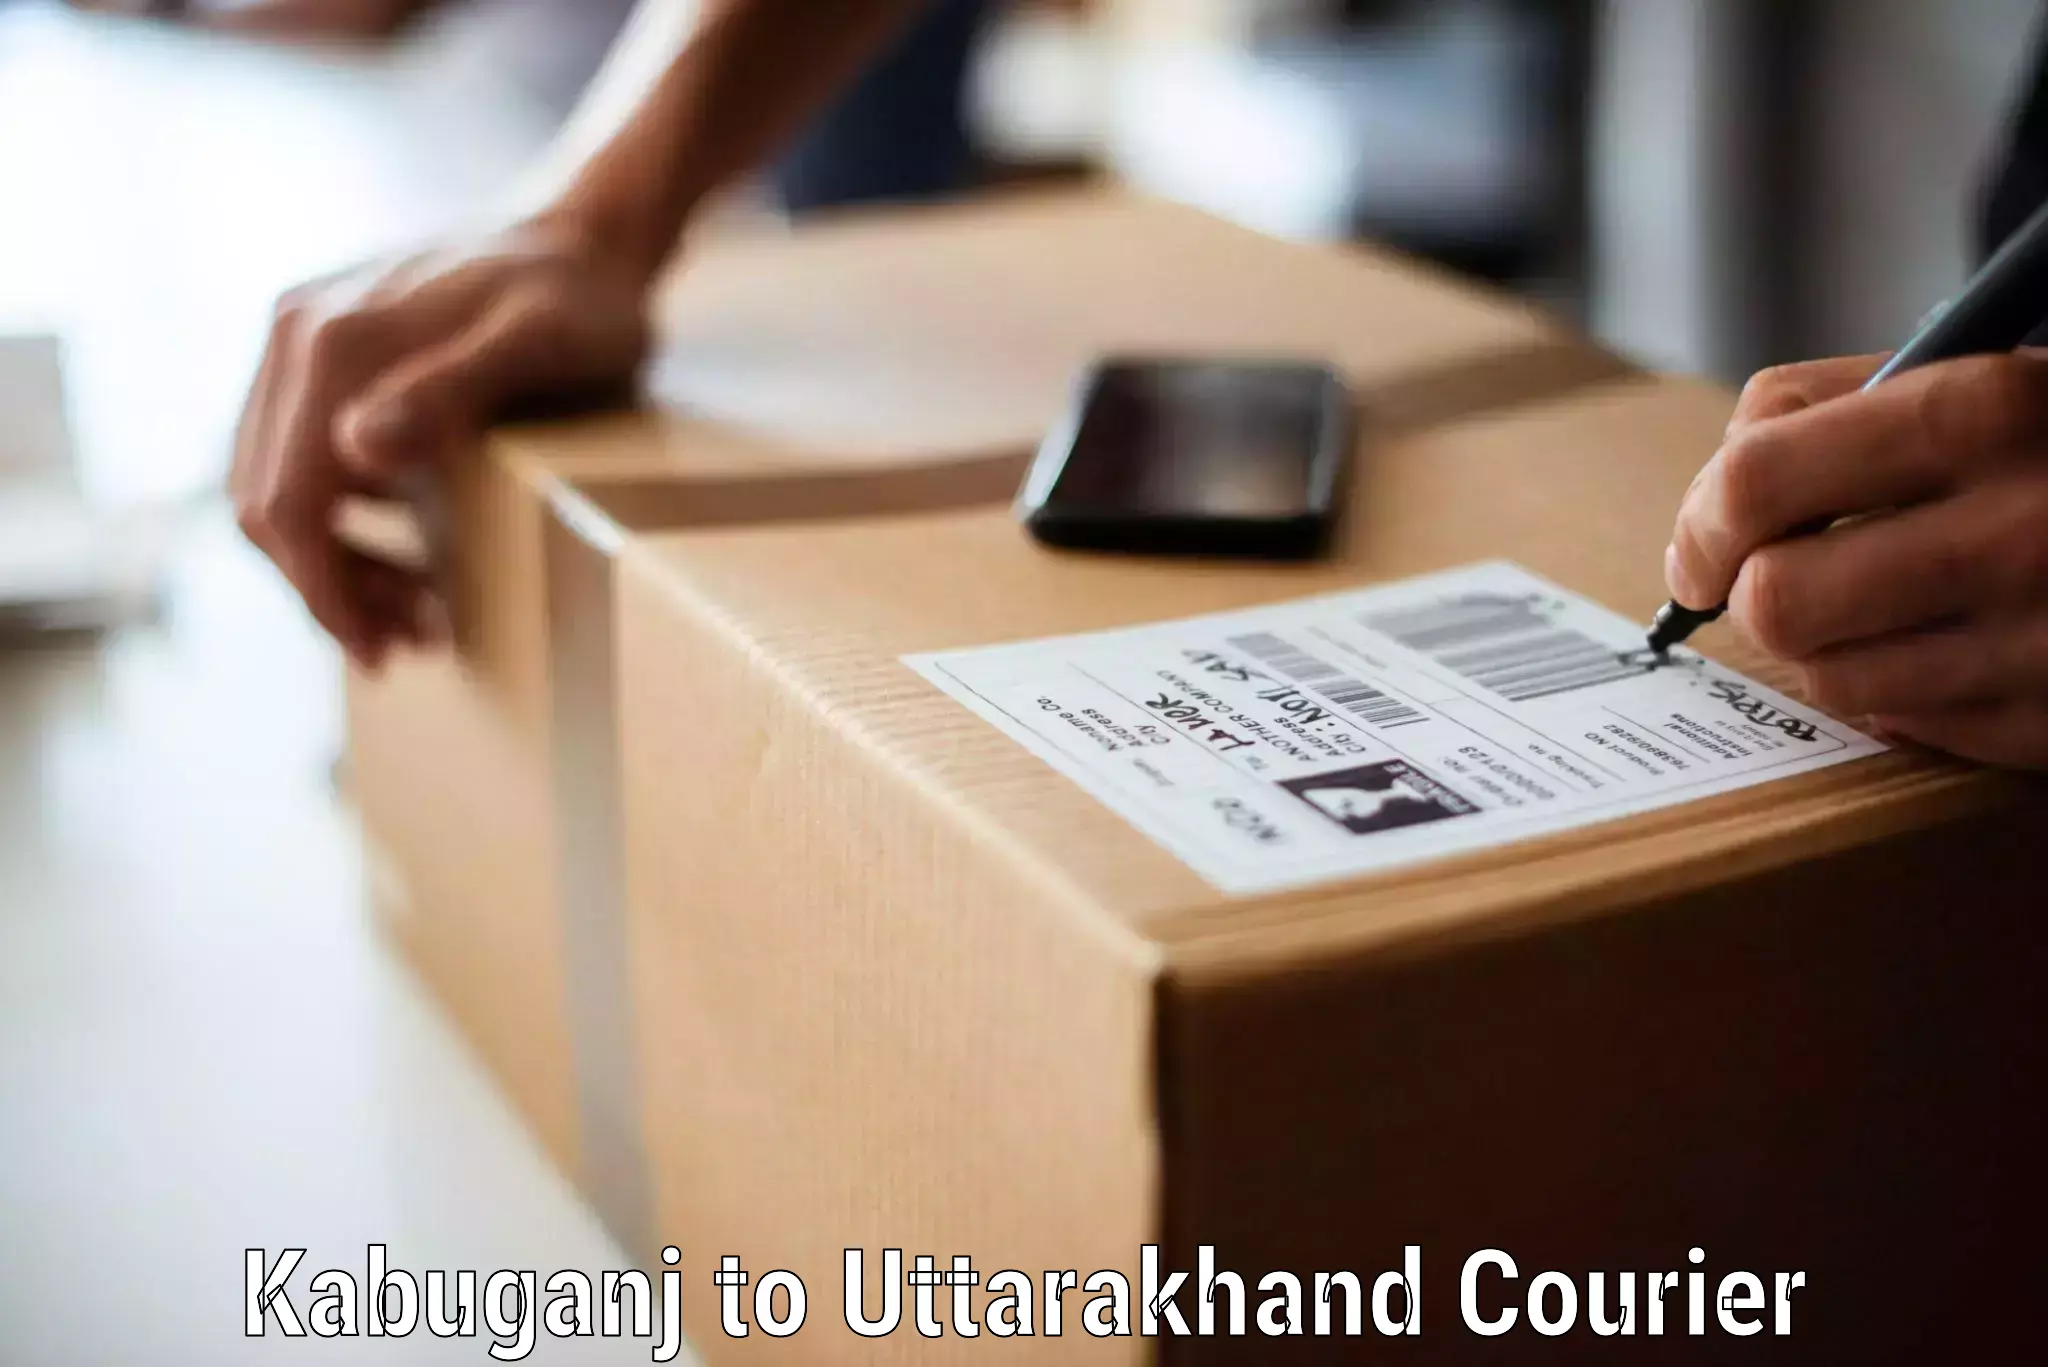 Furniture shipping services Kabuganj to Udham Singh Nagar